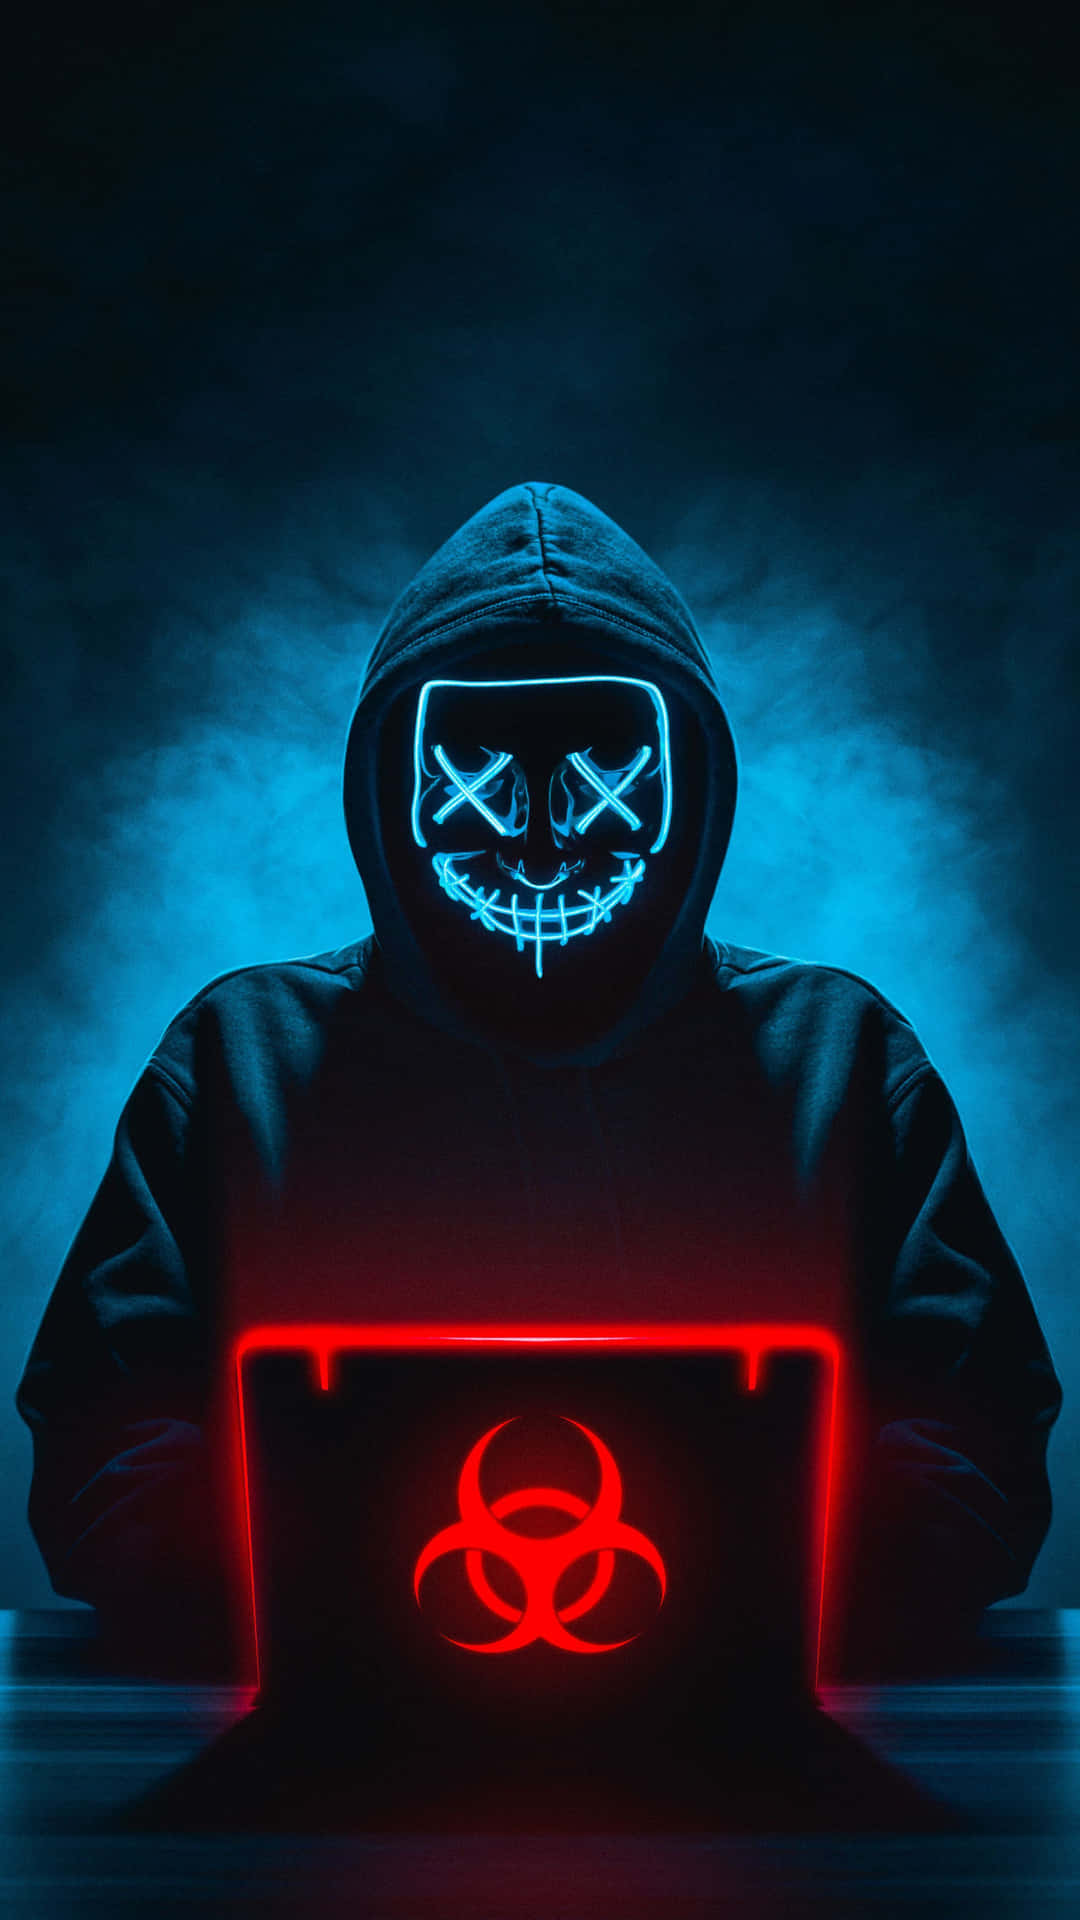 Hackeretager Fat På Cybersikkerhed Og Digitalisering.